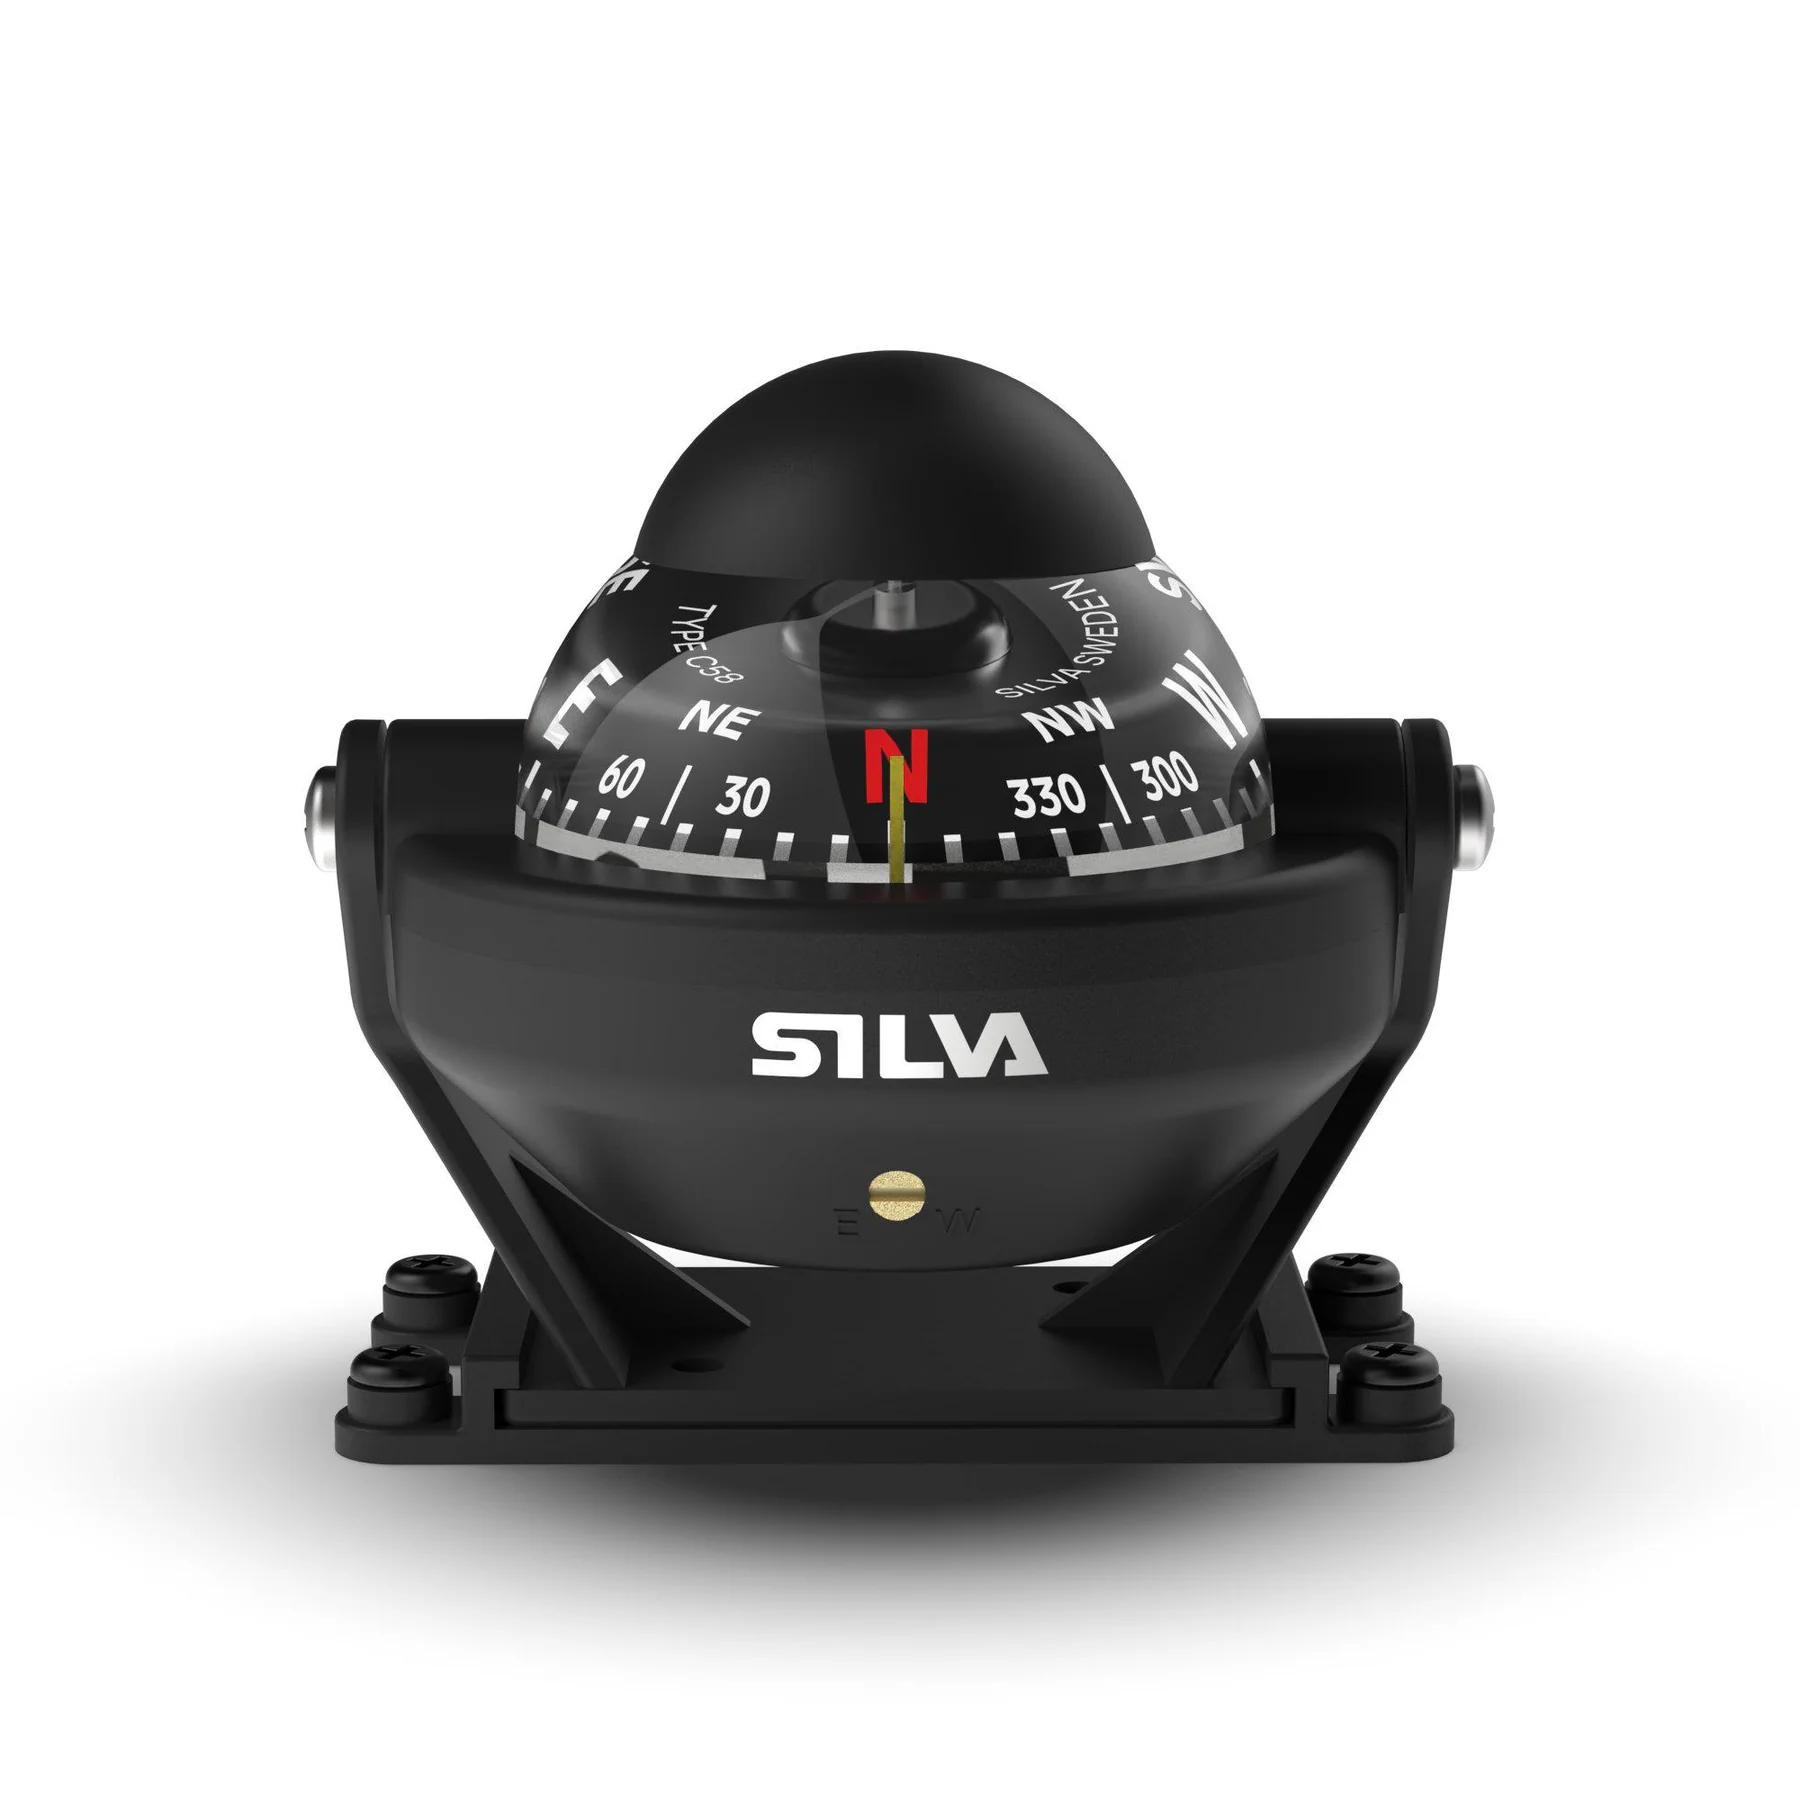 Silva Kompass mit Licht C58